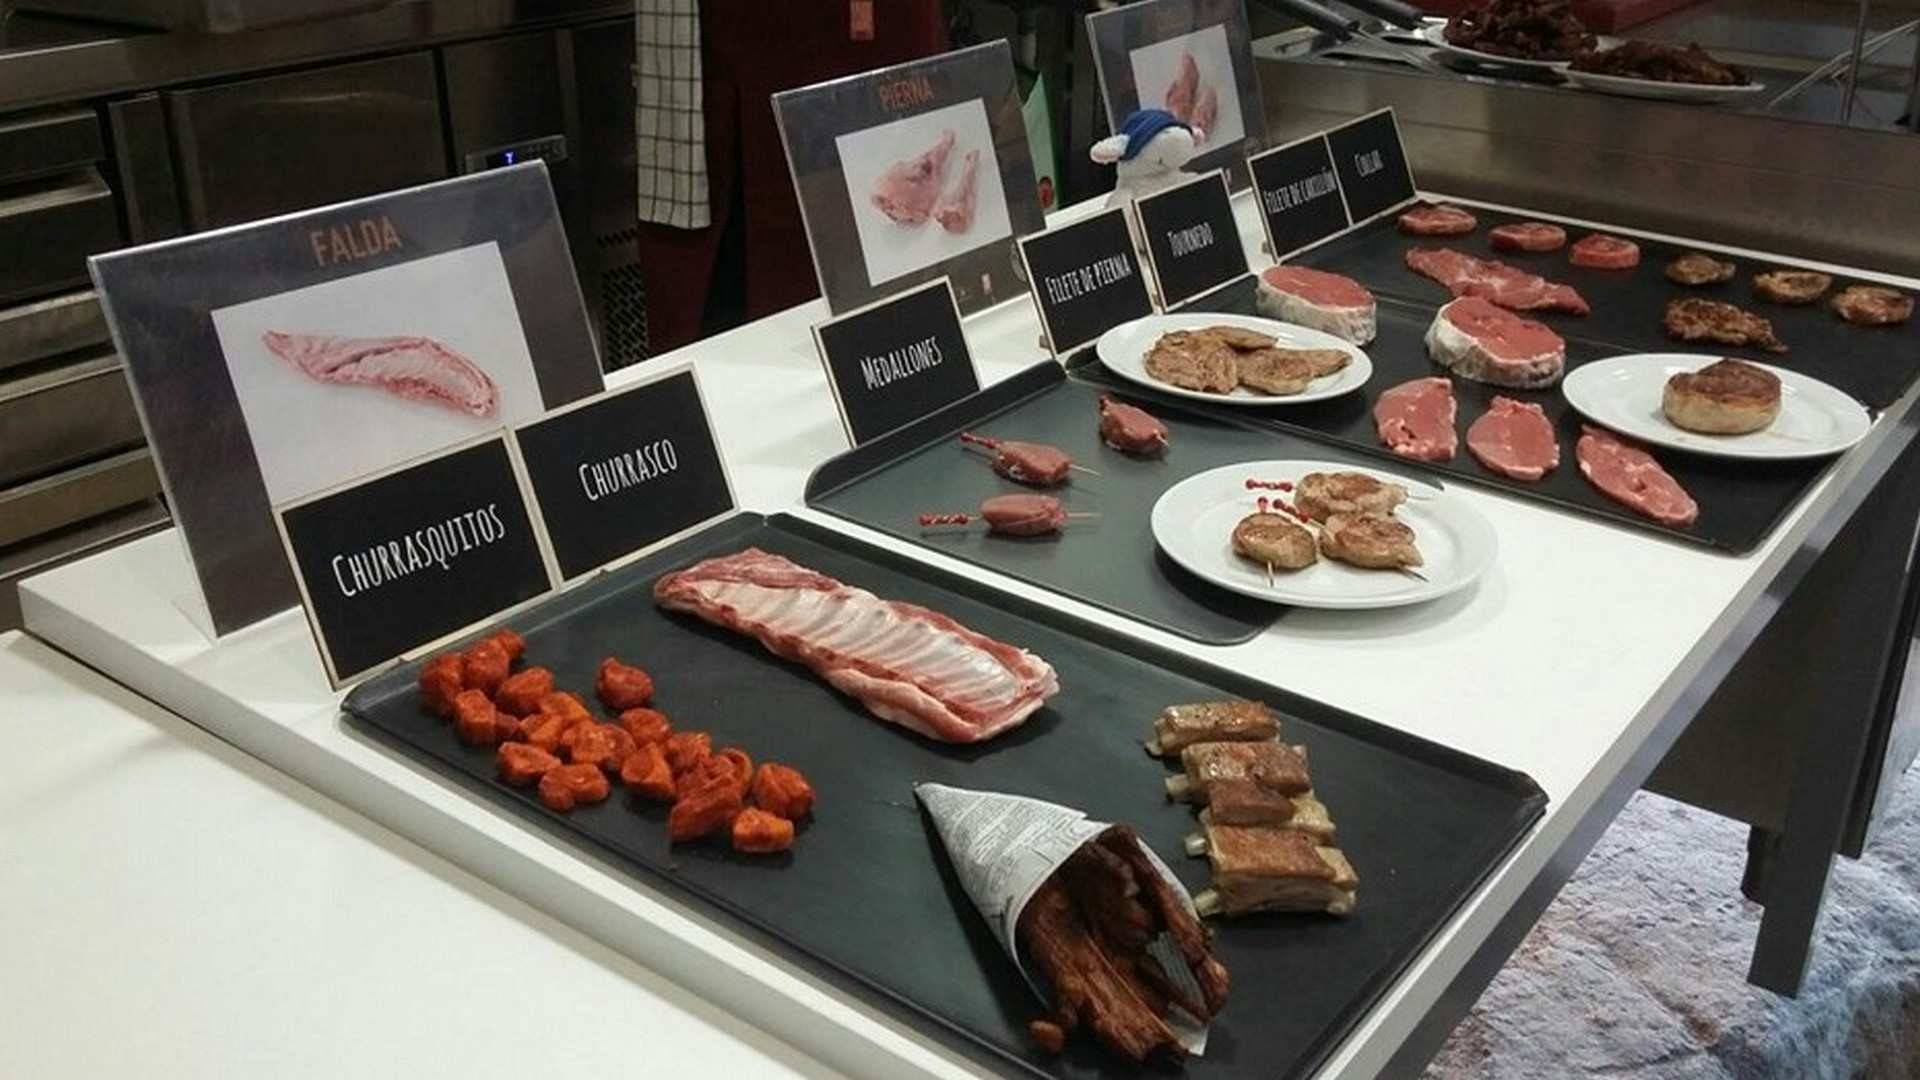 Hay una serie de falsos mitos sobre la carne de cordero que son totalmente falsos